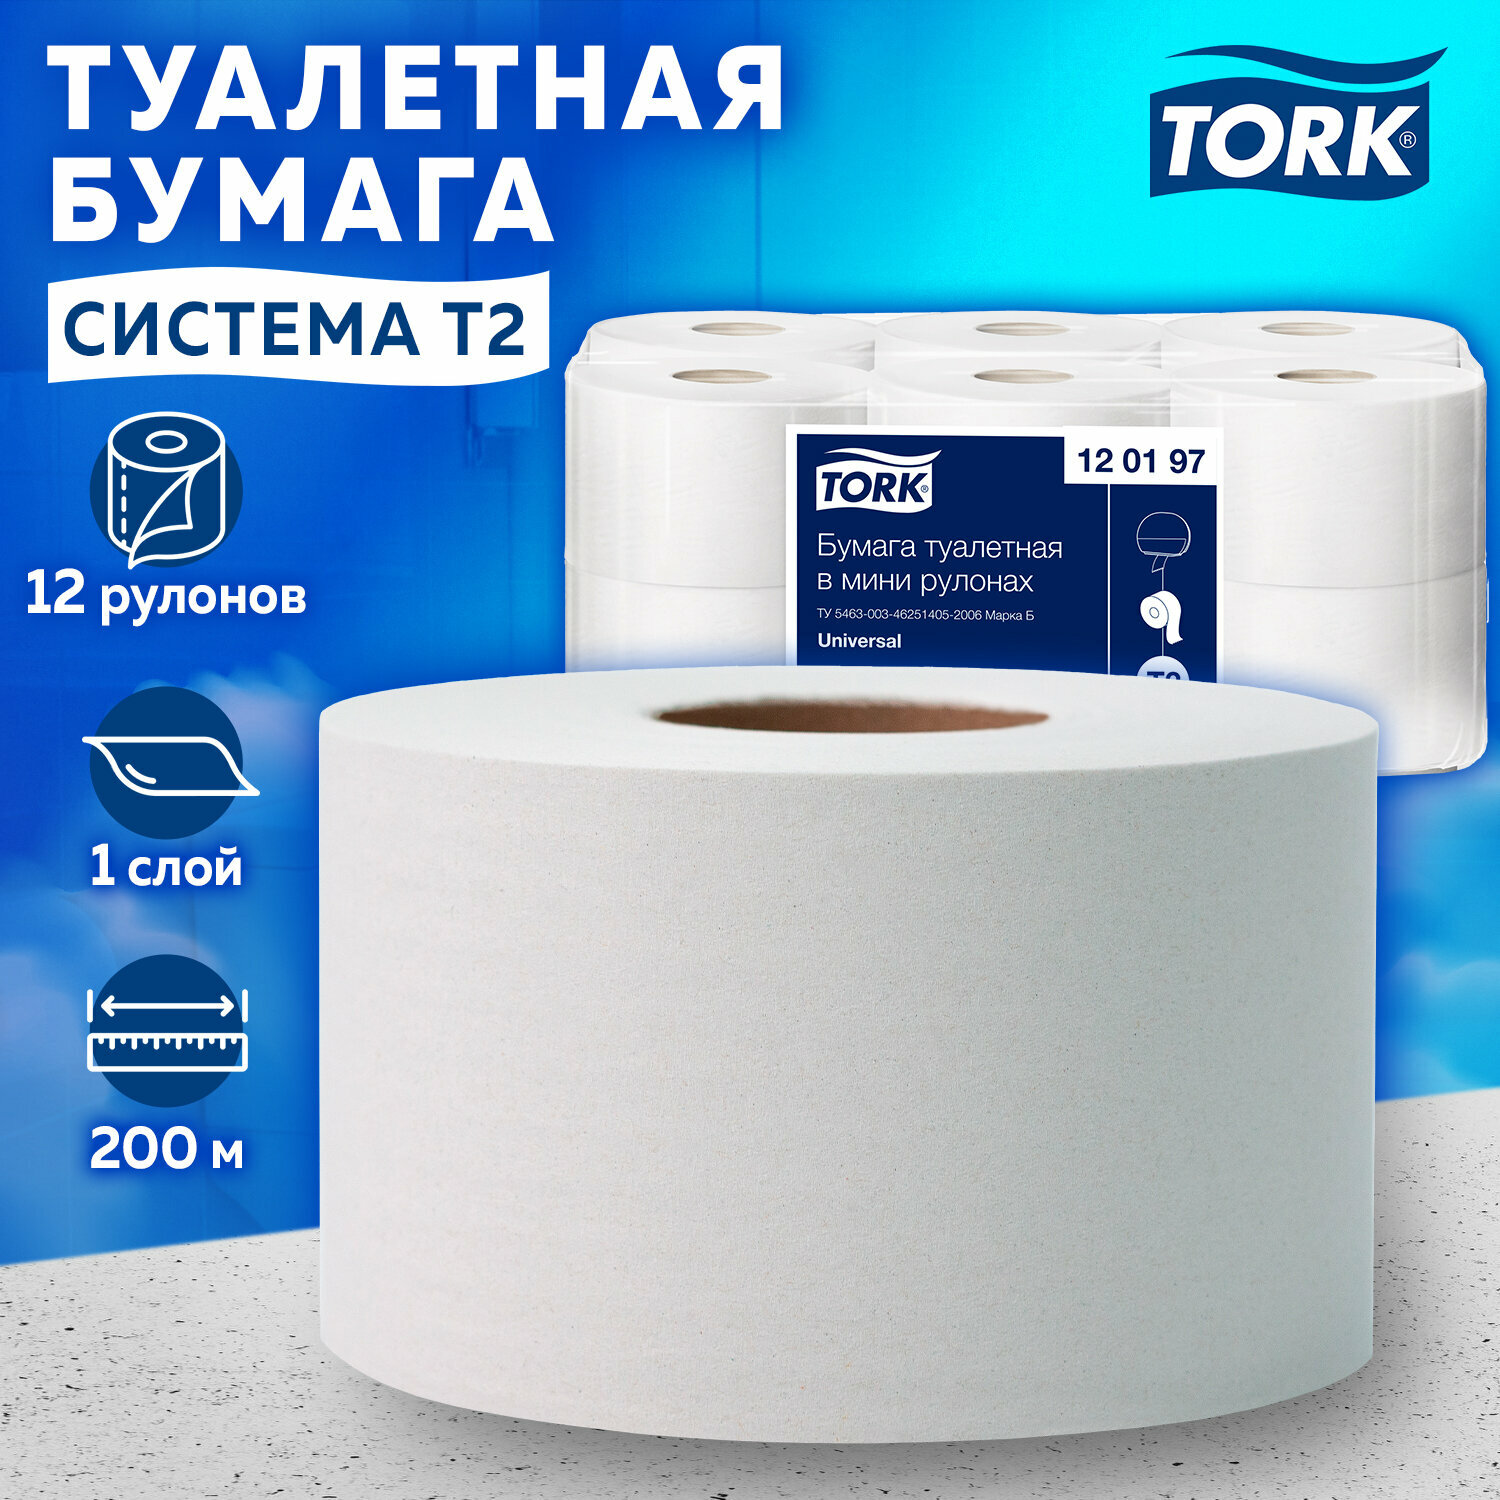 Туалетная бумага для диспенсера в больших рулонах для офиса 200 метров, Tork (Система T2) Universal, 1-слойная, Комплект 12 рулонов, 120197